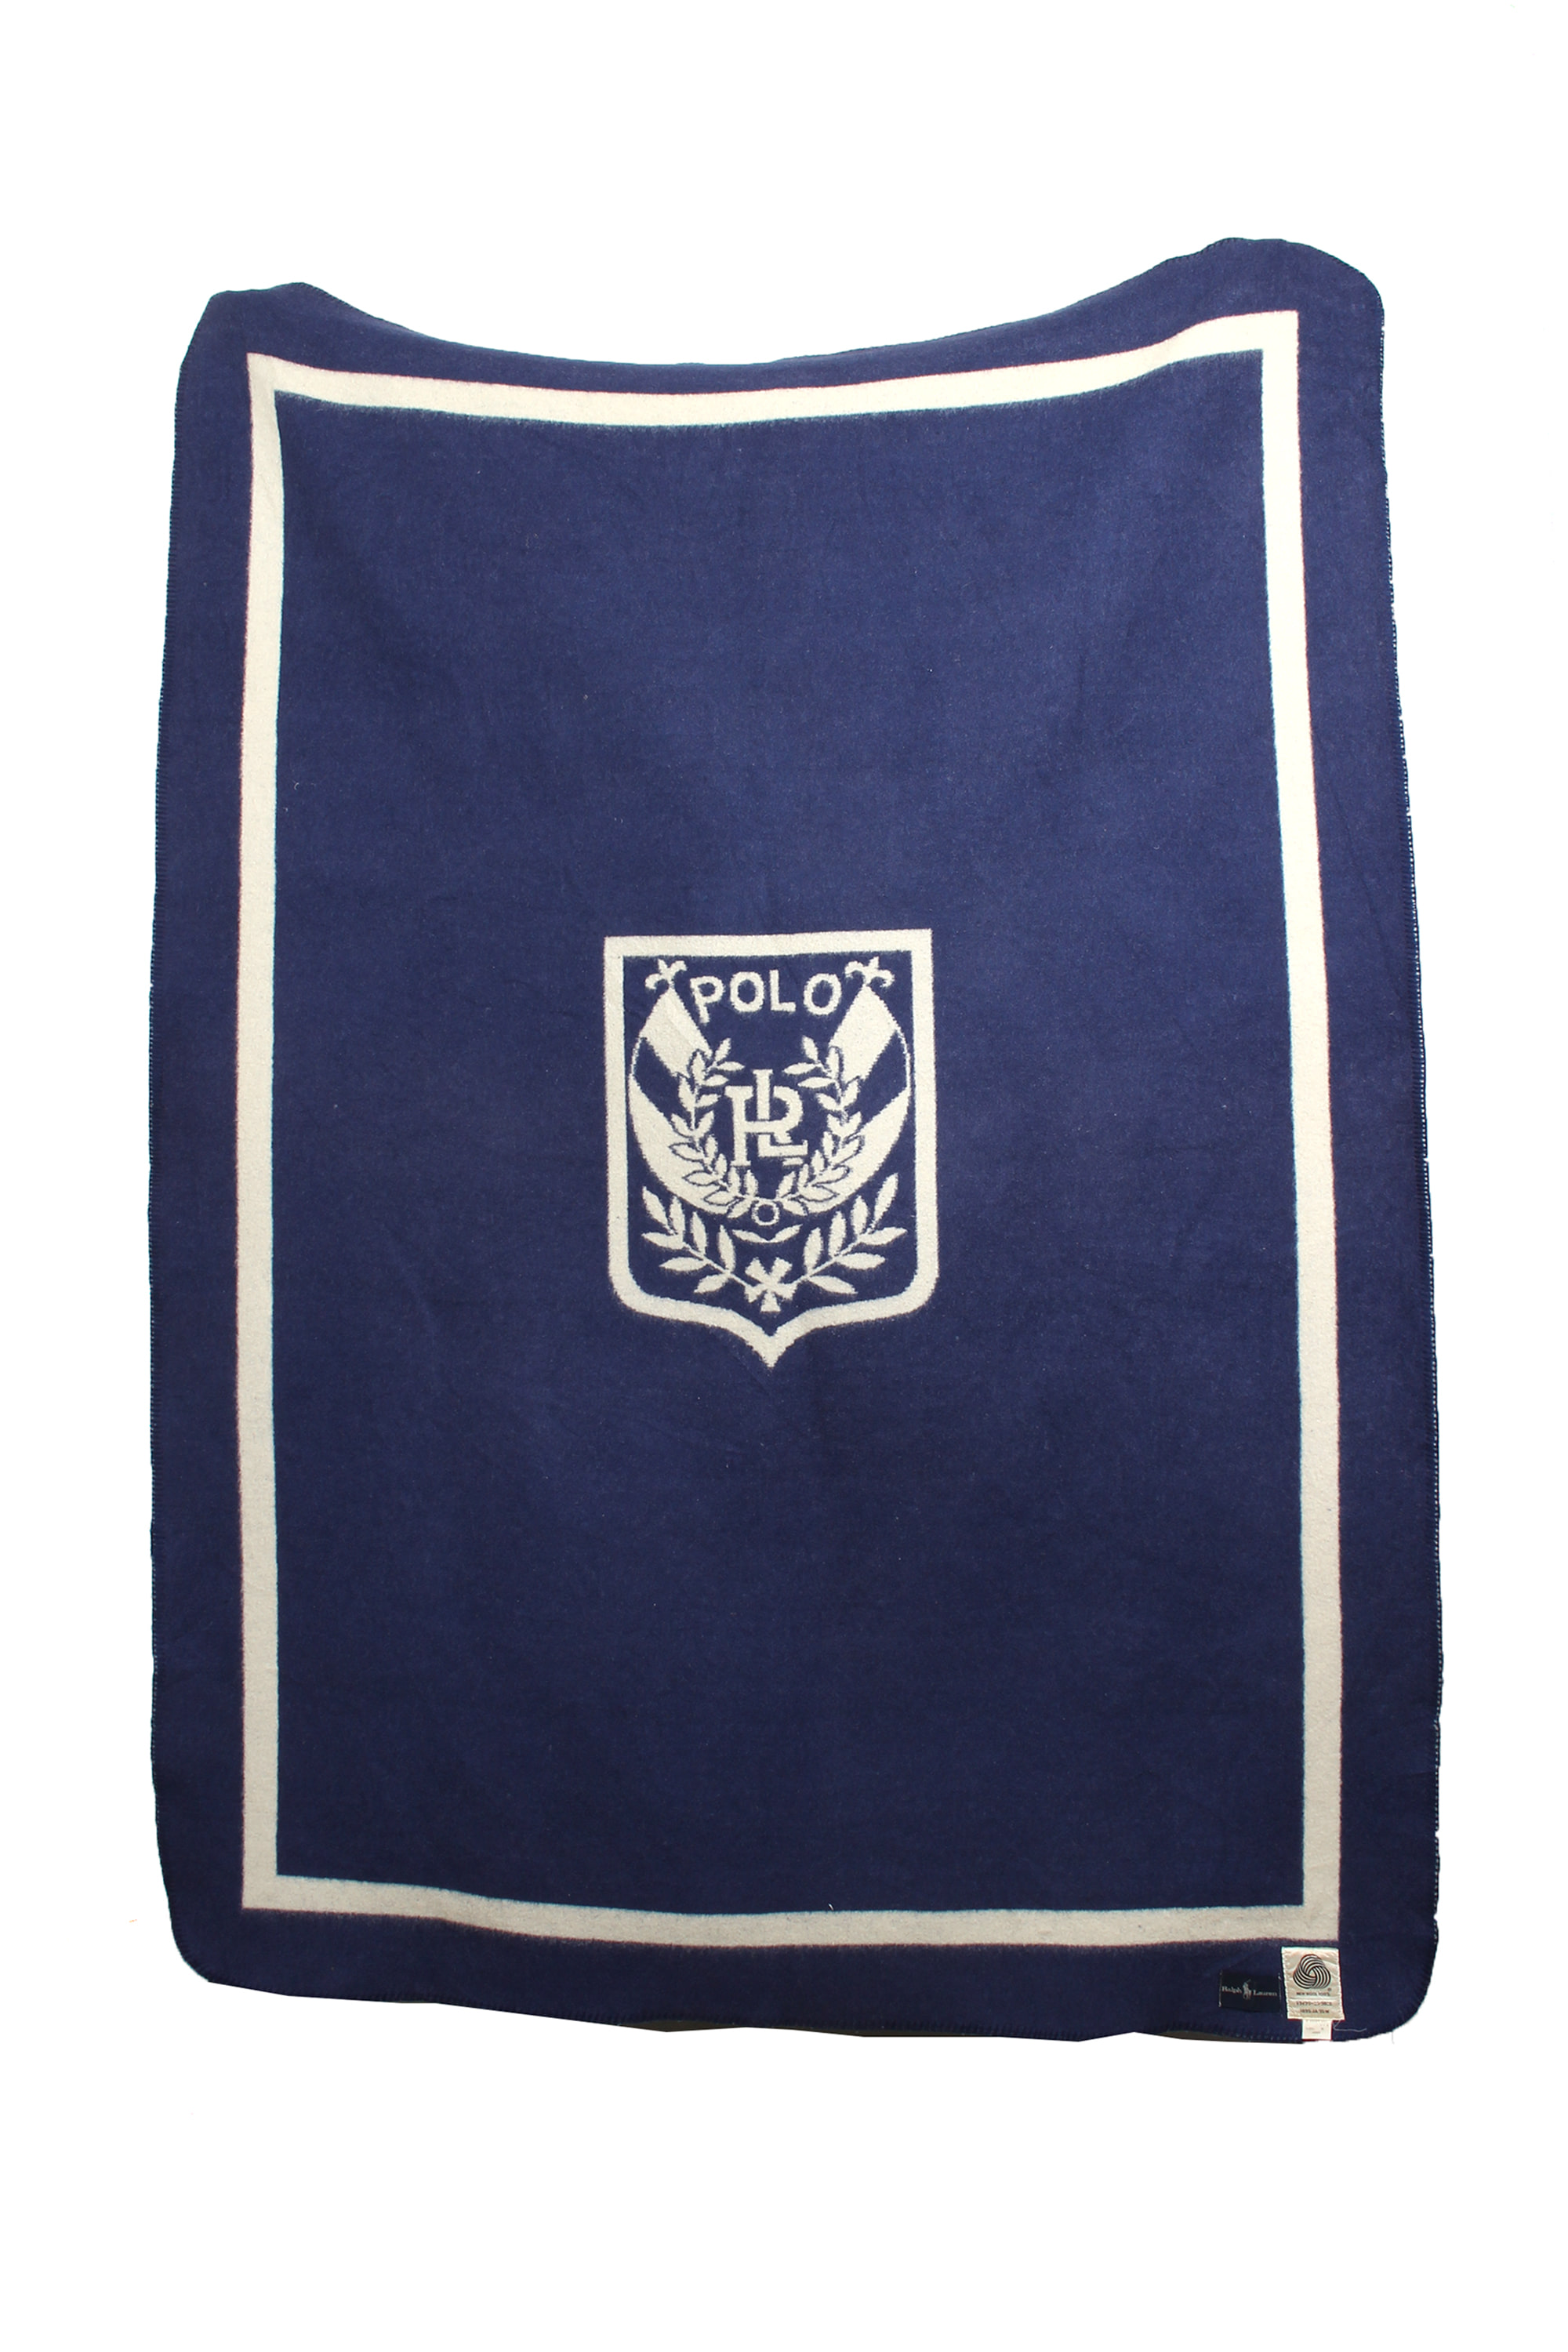 90s Polo Ralph Lauren blanket(140x200)